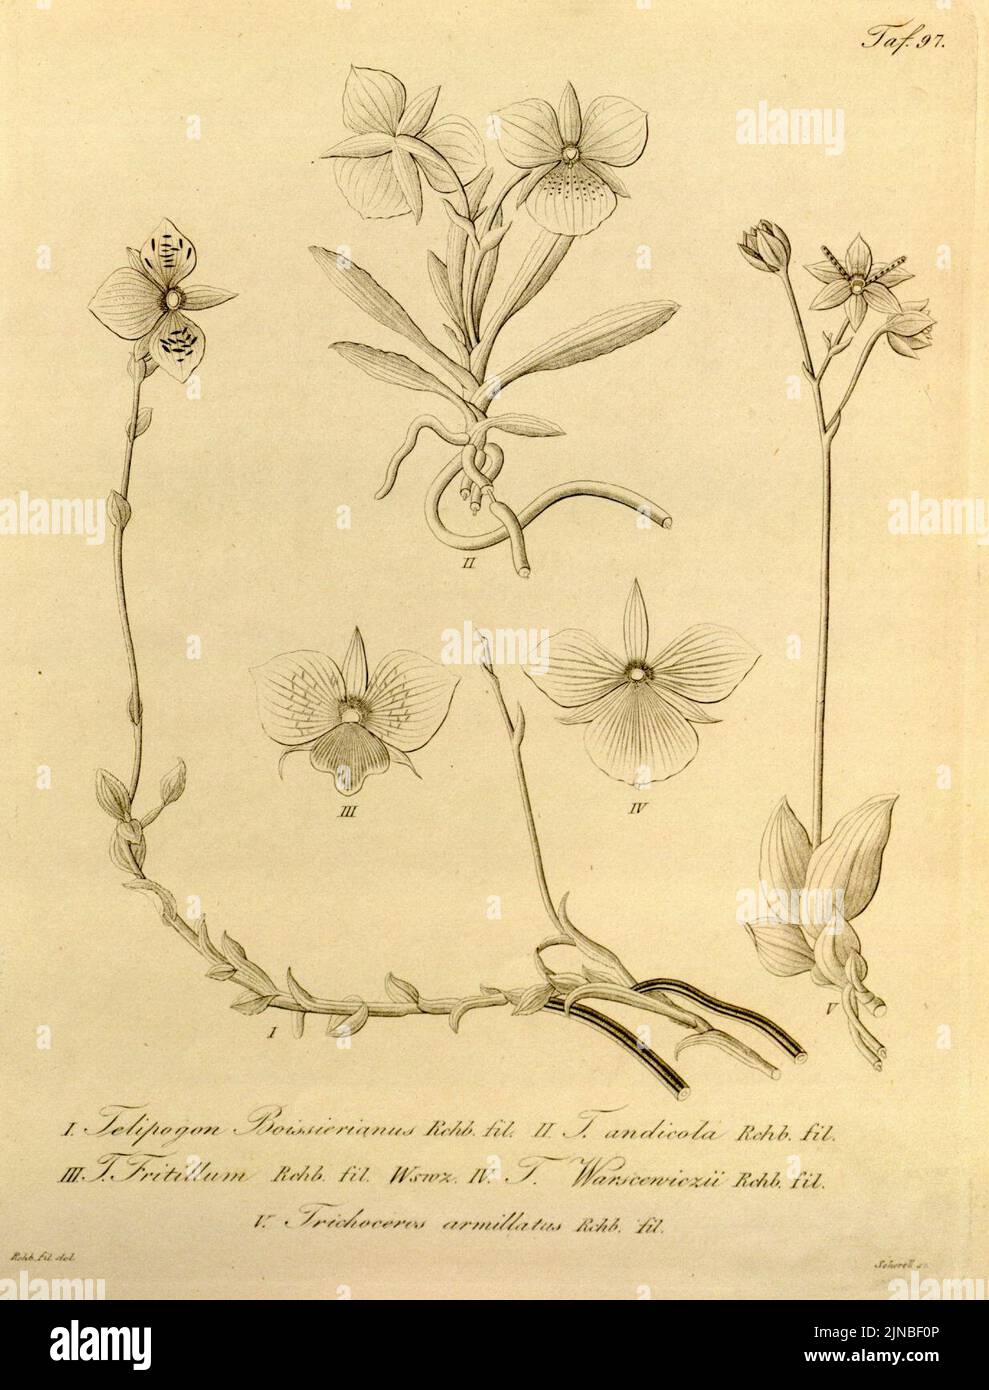 Telipogon boissierianus - Telipogon andicola - Telipogon fritillum - Telipogon papilio (as T. warszewiczii) - Trichoceros antennifer (as Tr. armillatus) - Xenia vol 1 pl 97 (1858) Stock Photo